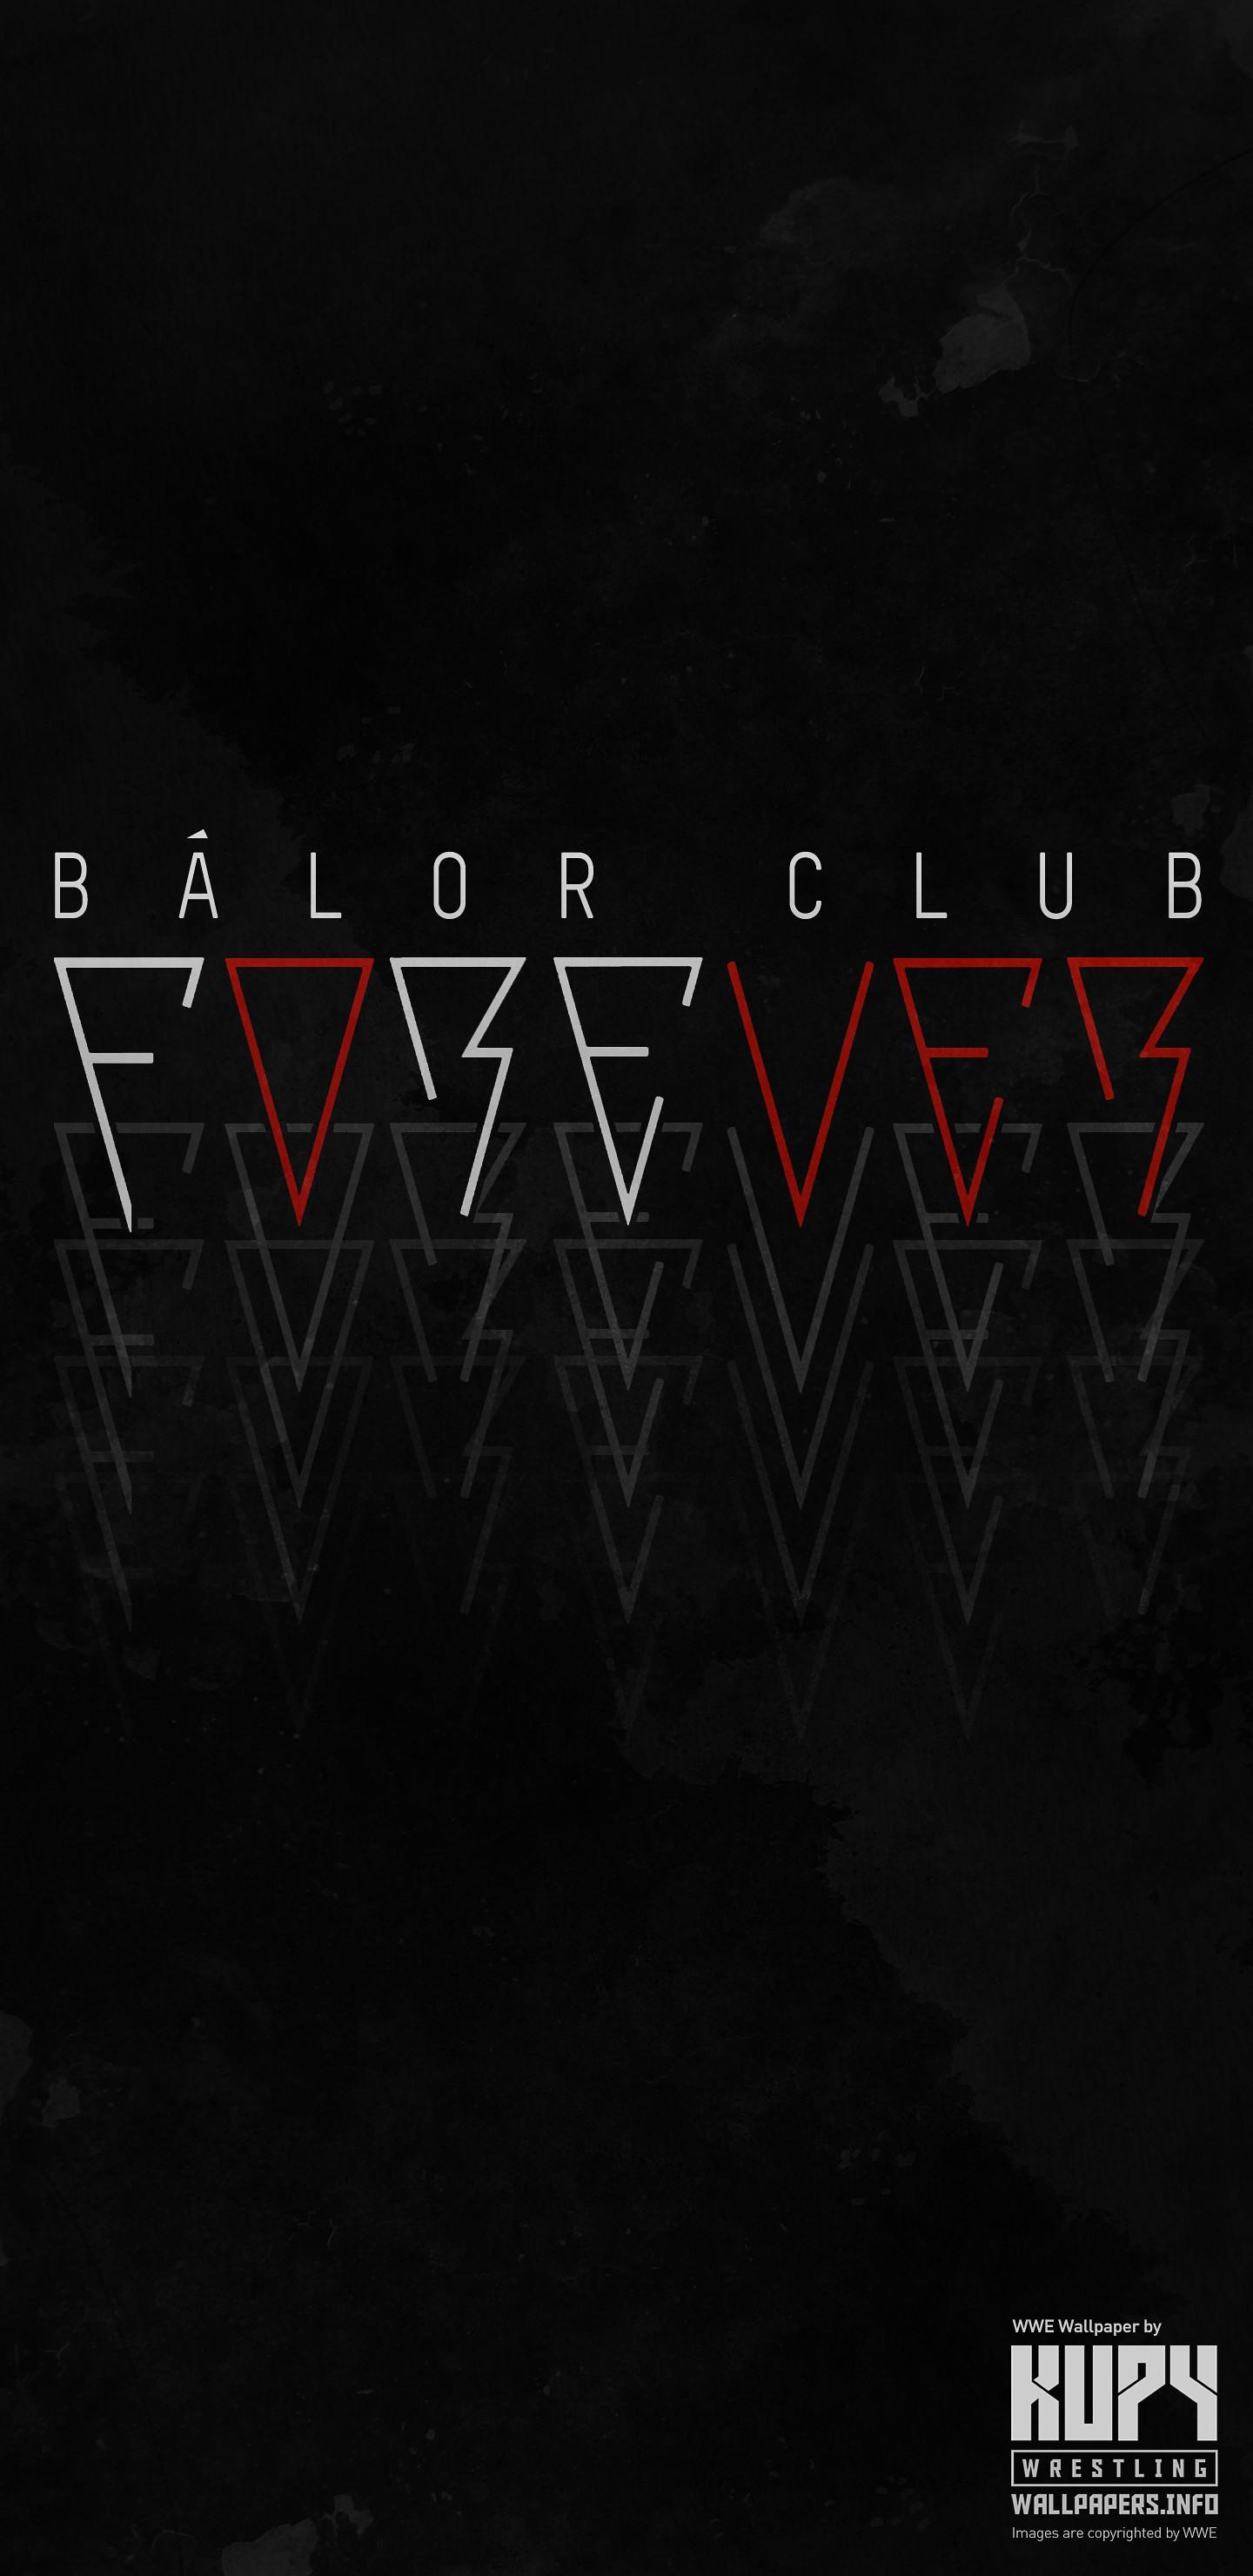 NEW Balor Club fOreVER wallpaper!